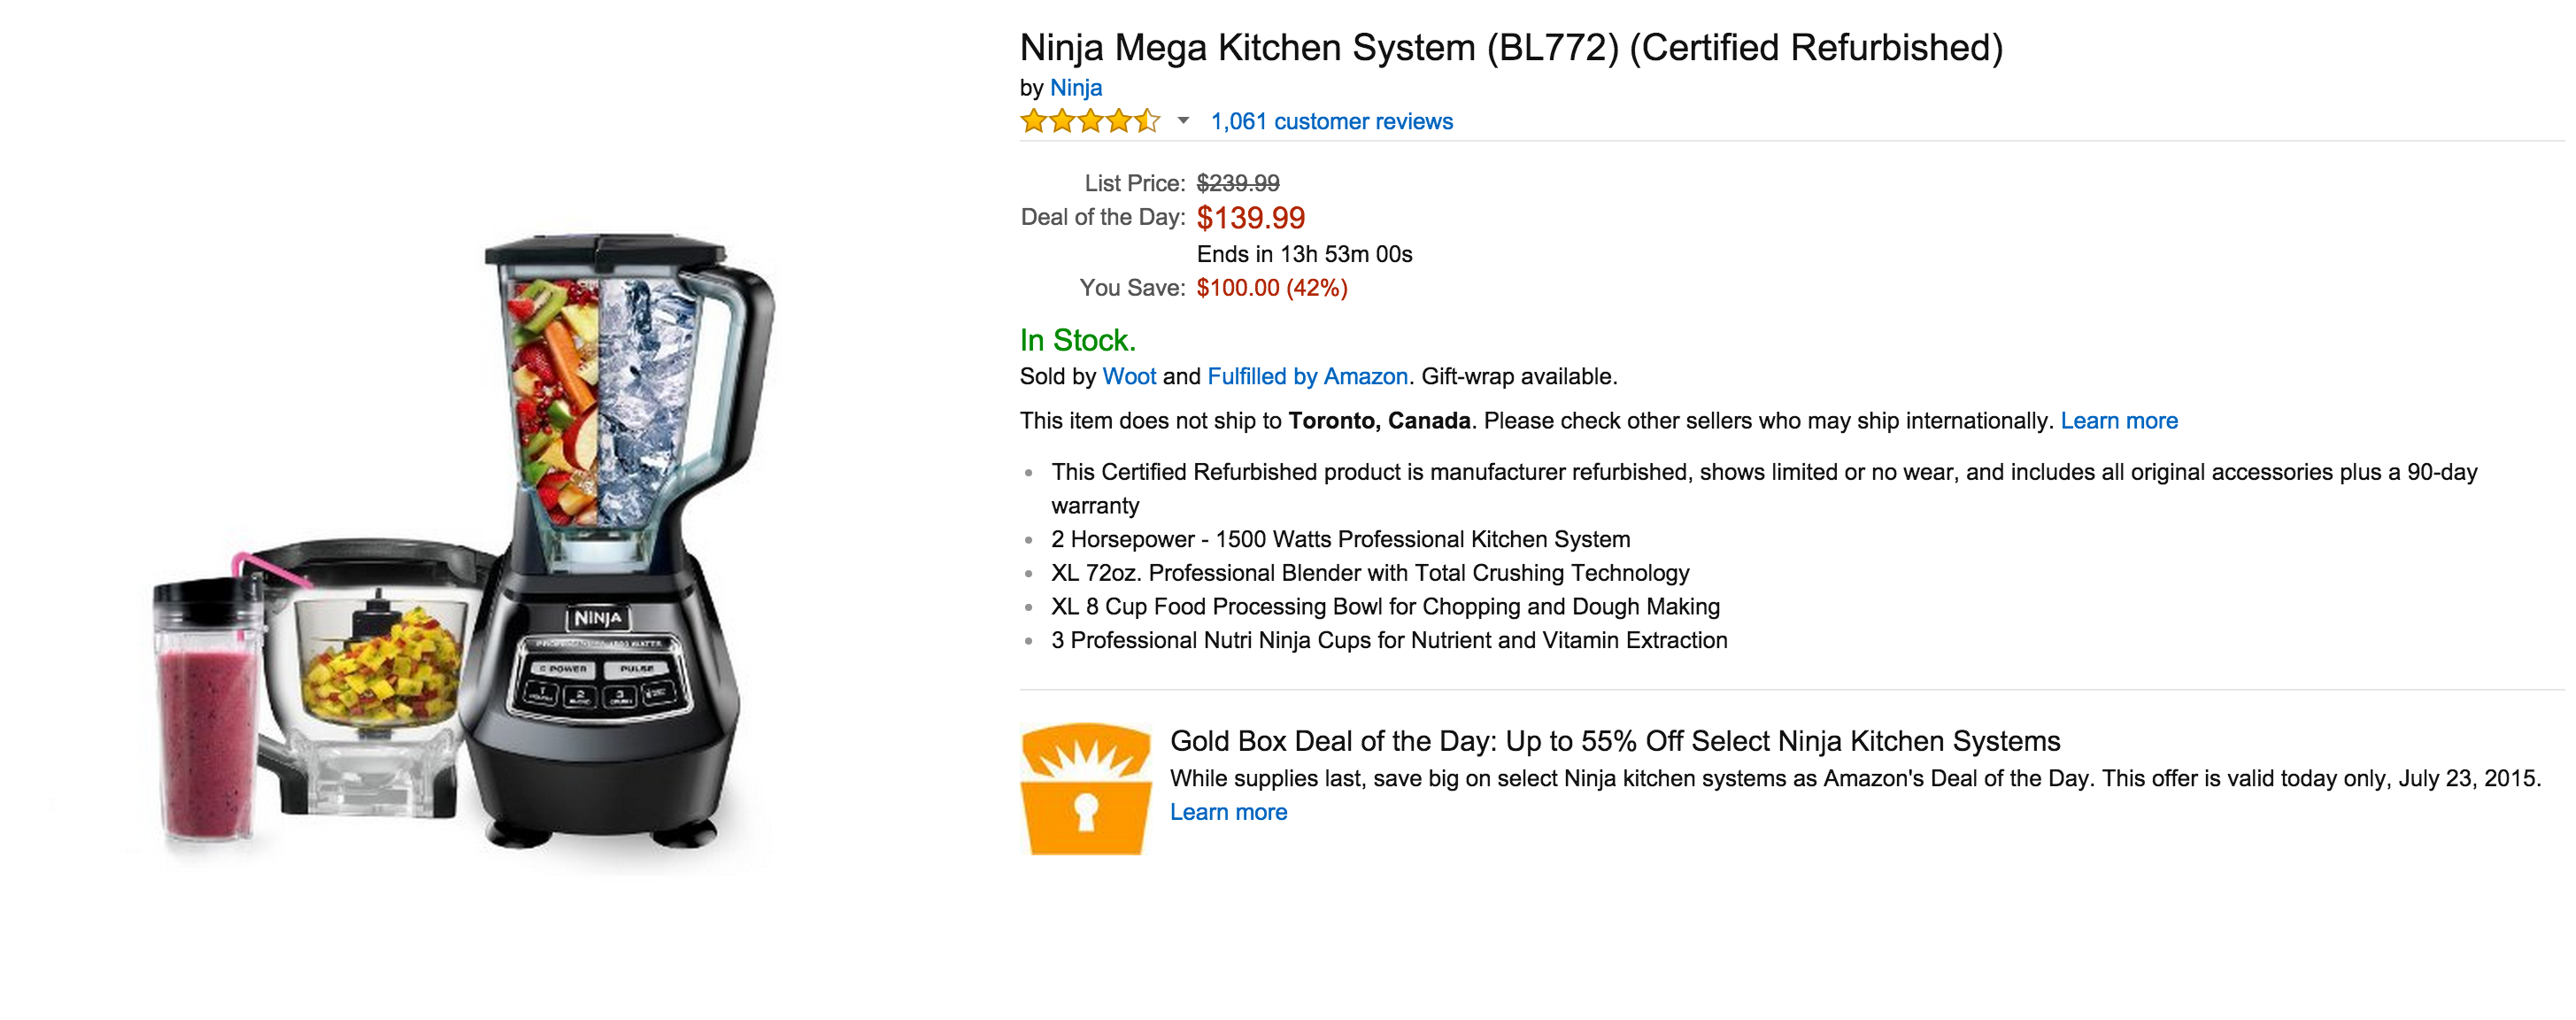 Ninja Mega Kitchen System 72oz Blender with Accessories - Black